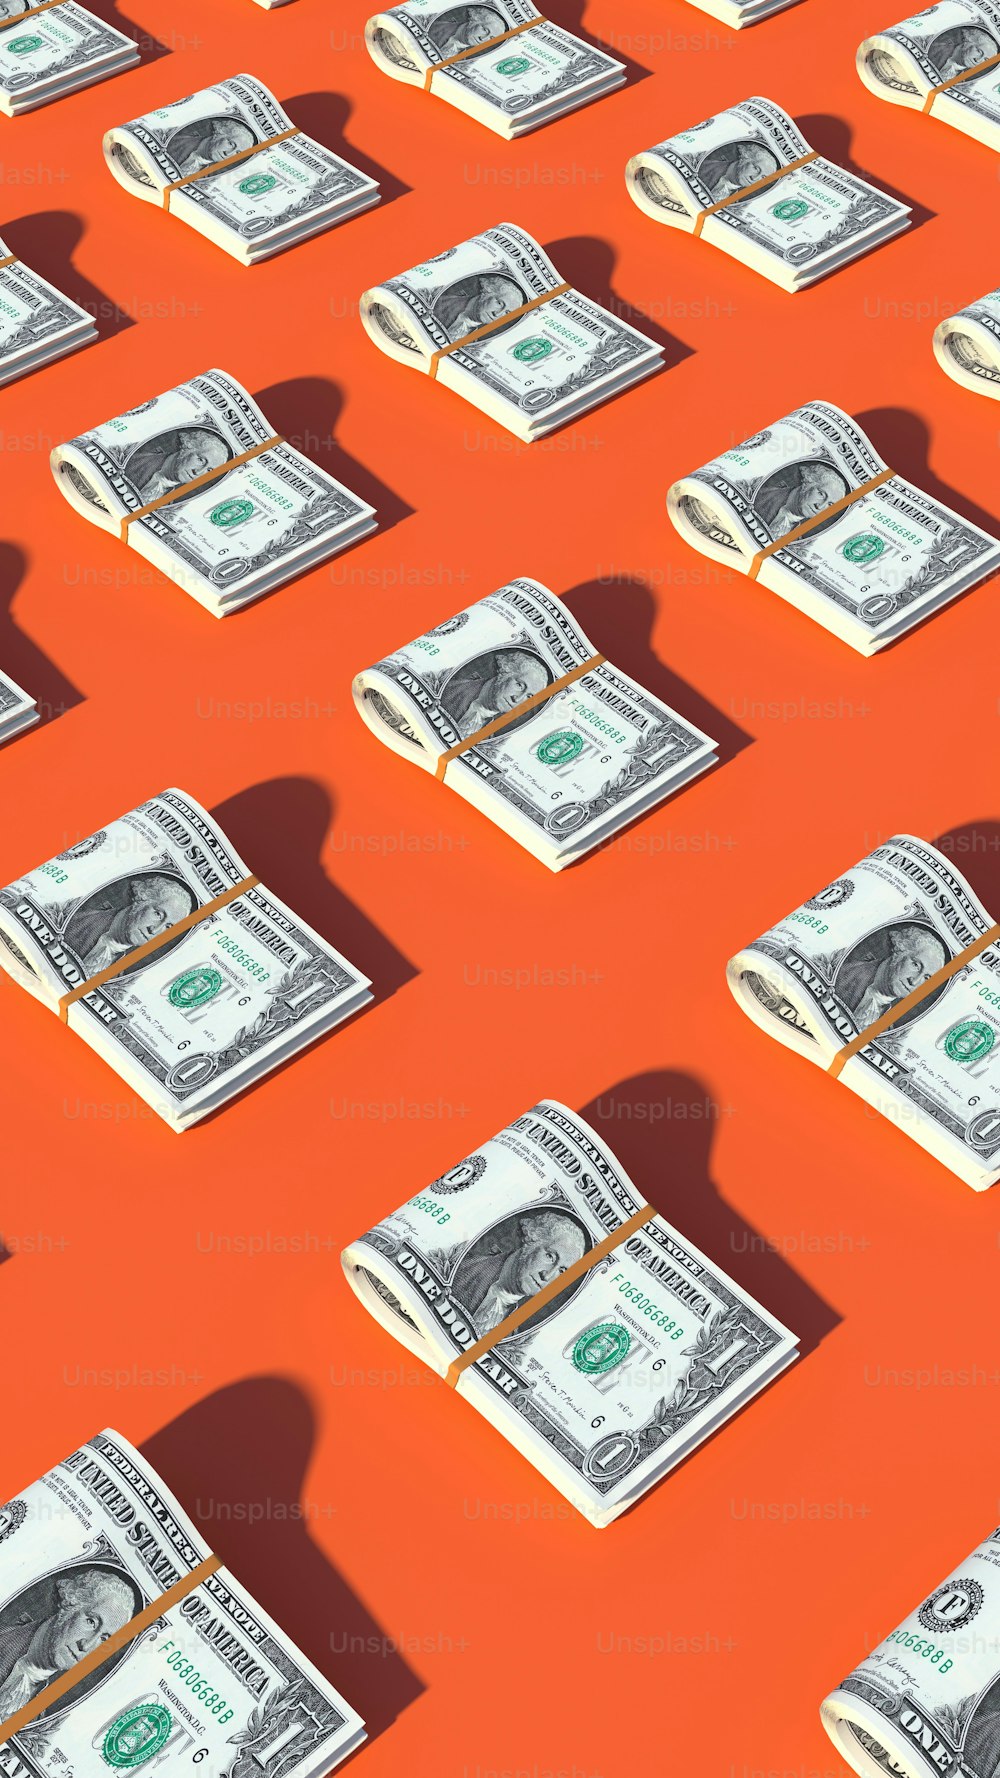 Ein Haufen Geld, das auf einer orangefarbenen Oberfläche sitzt